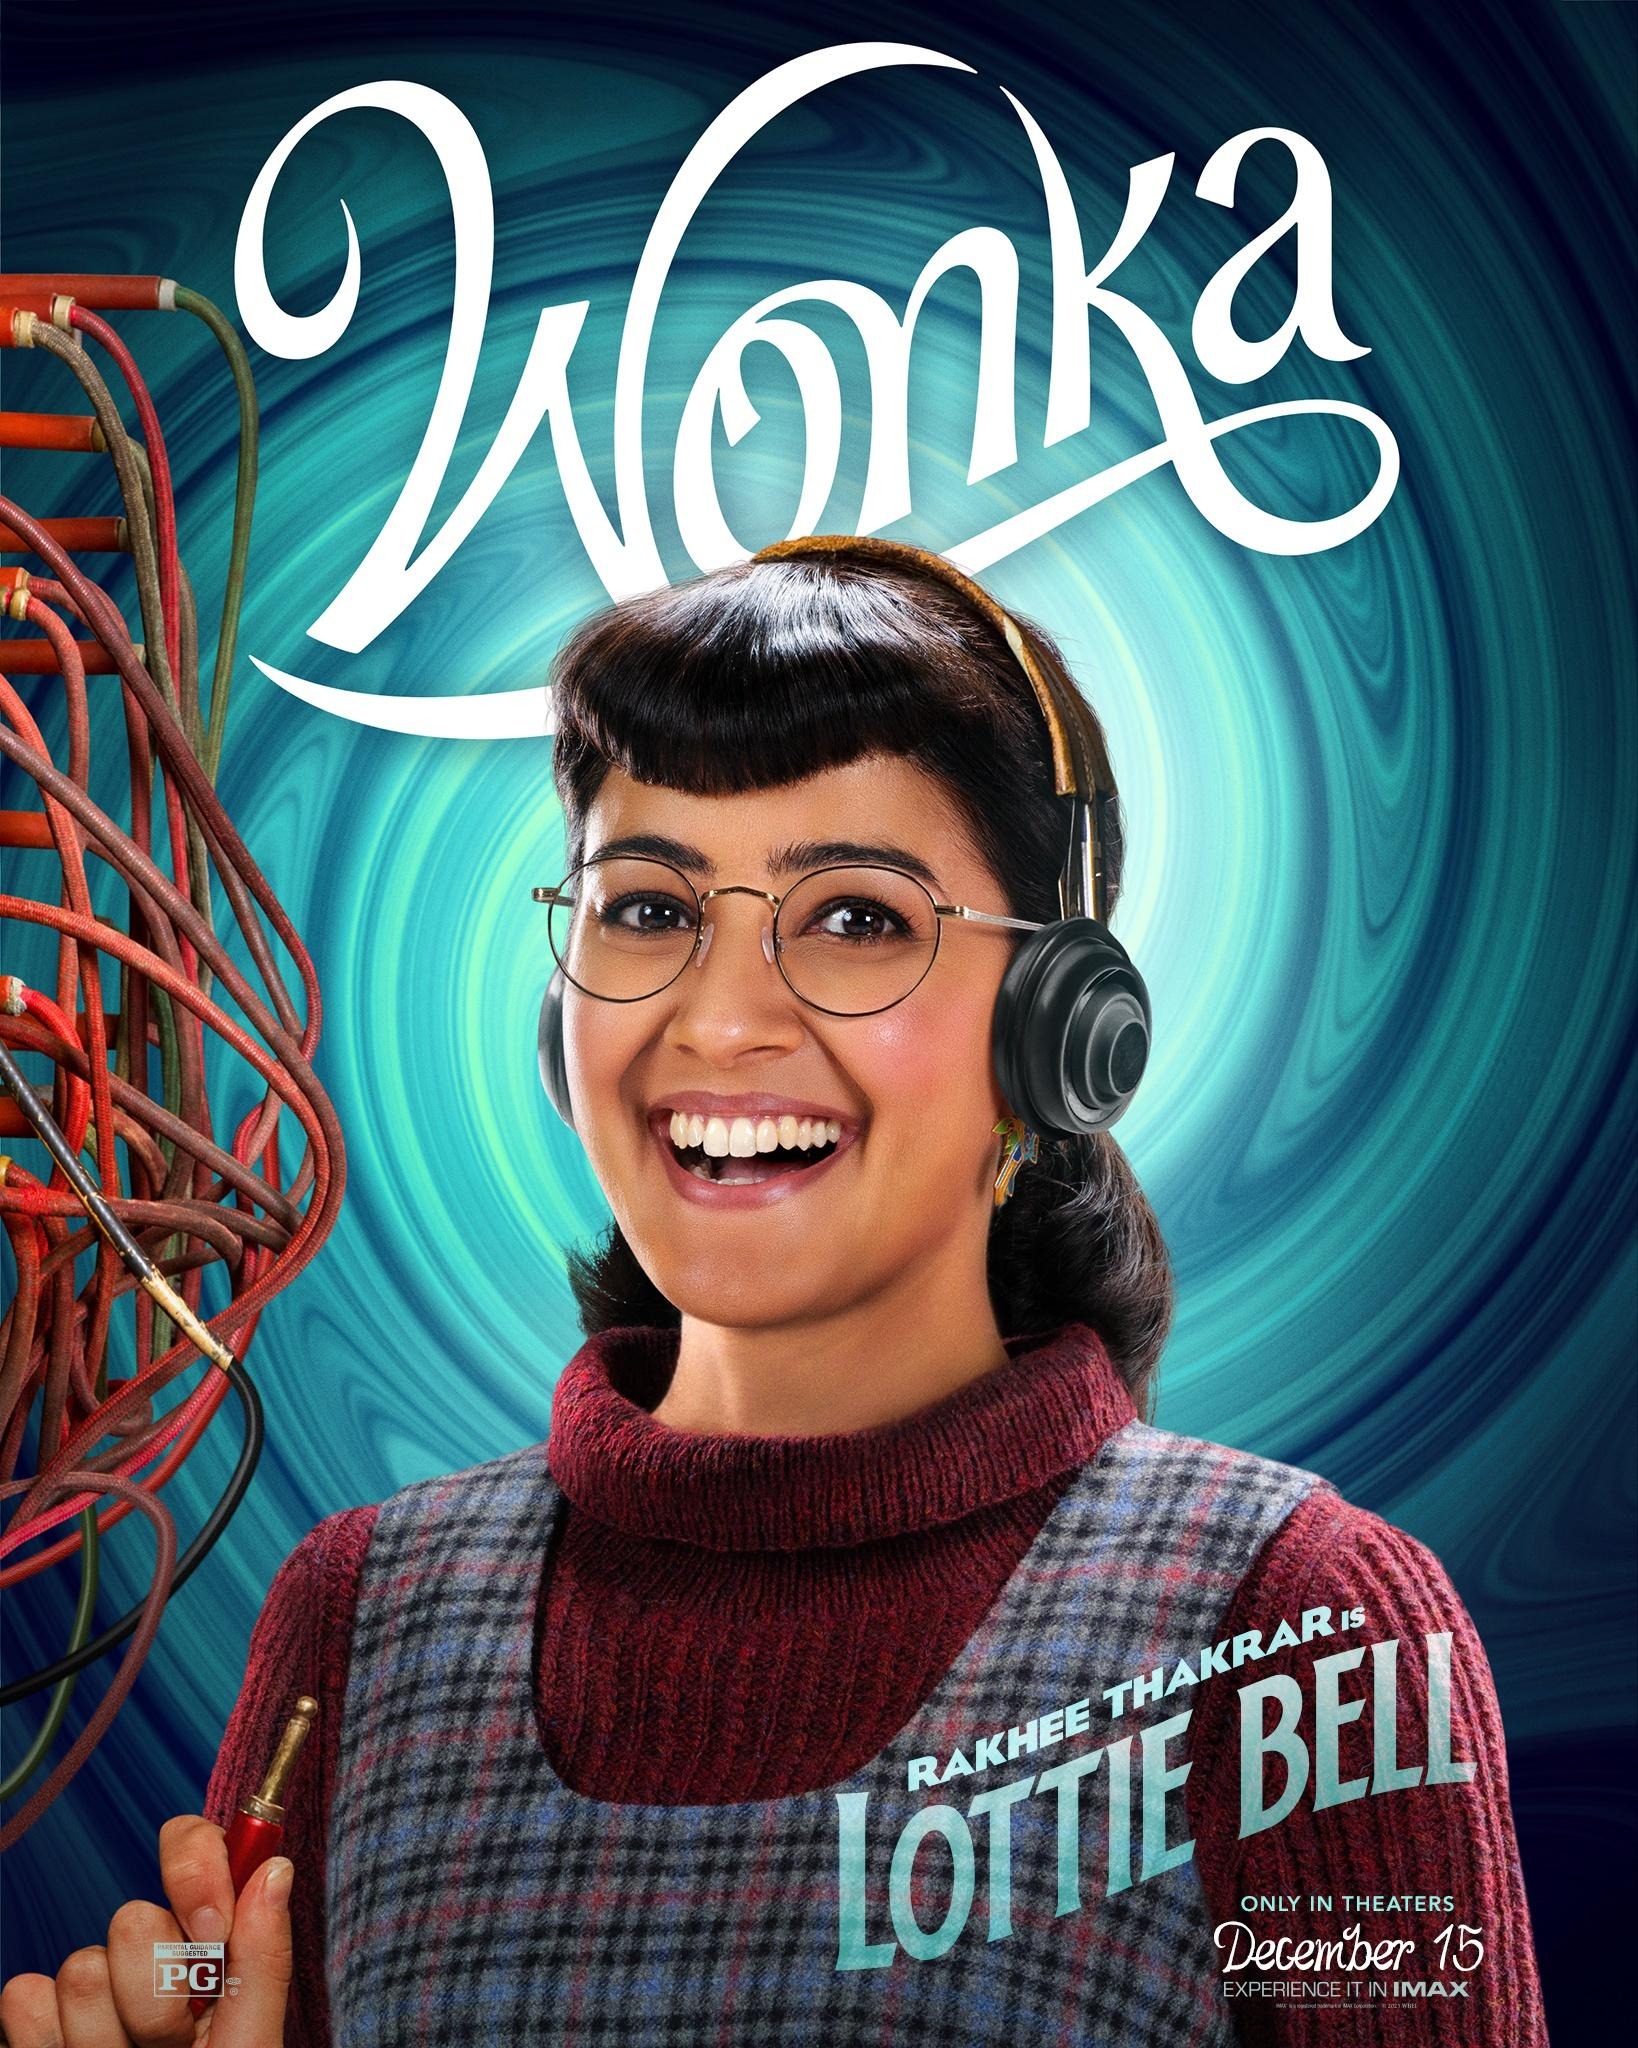 Mega Sized Movie Poster Image for Wonka (#7 of 22)